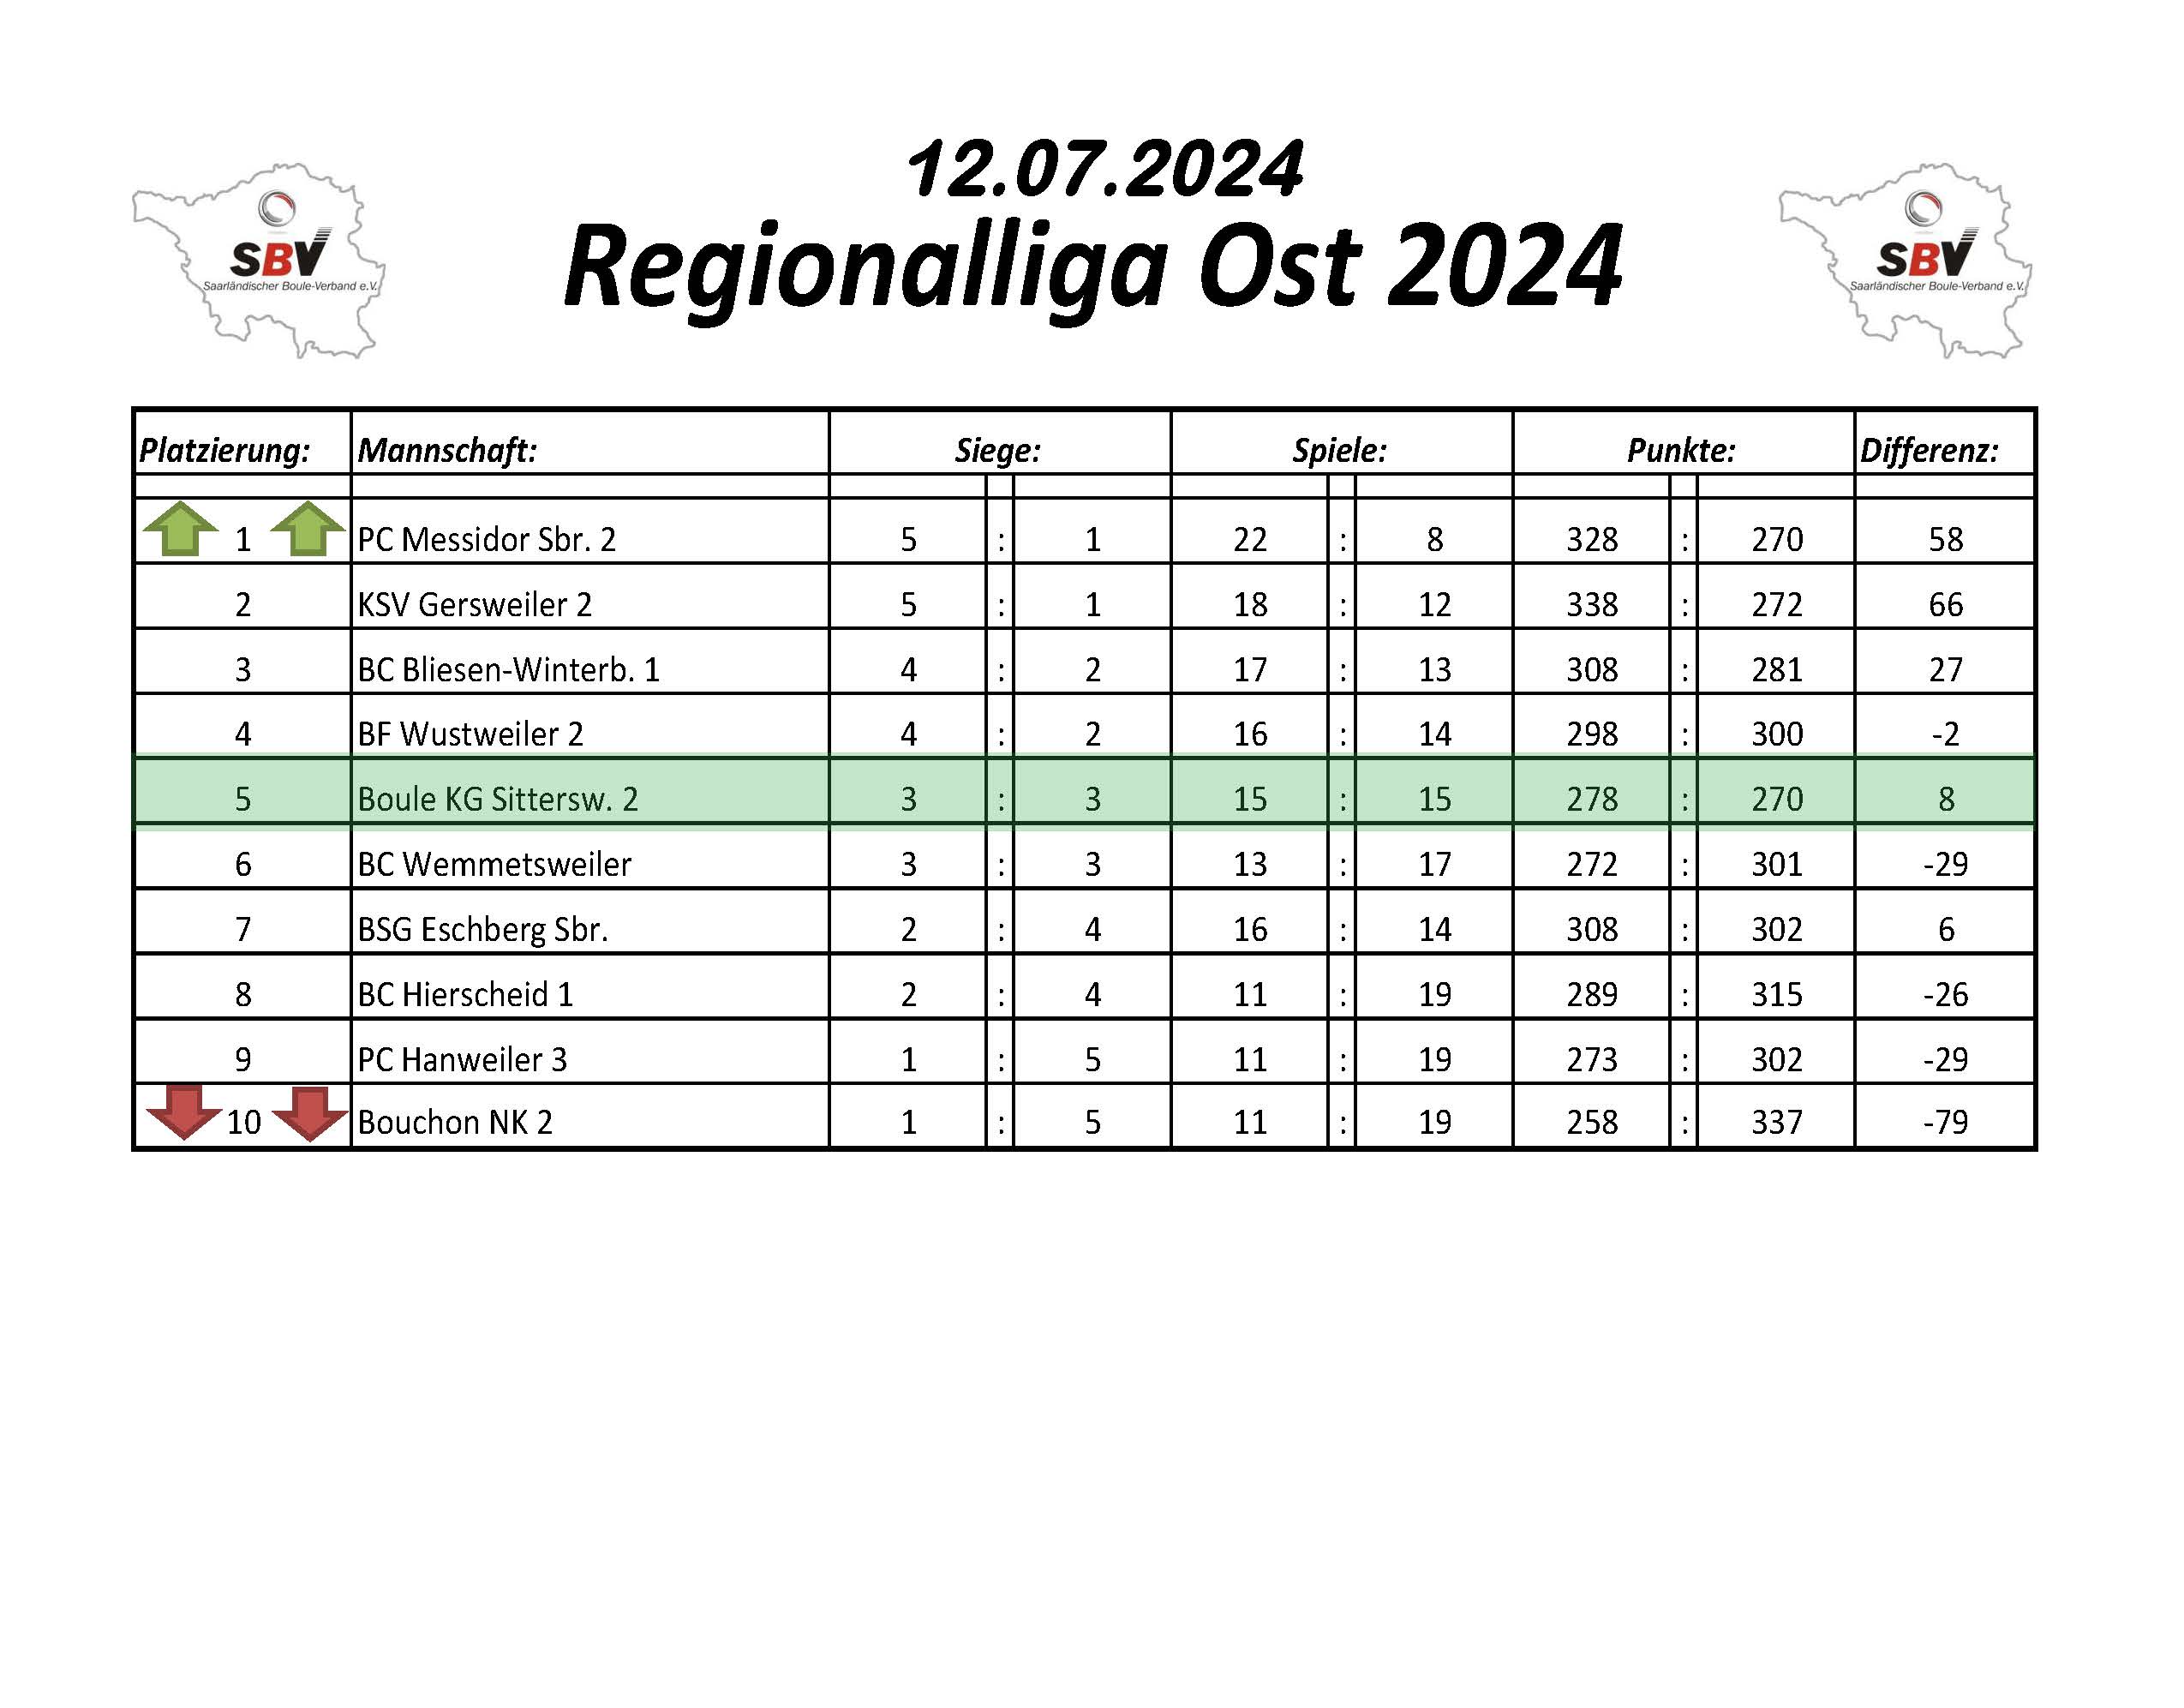 2022 SBV Bezirksliga Ost Tabelle 1 Spieltag